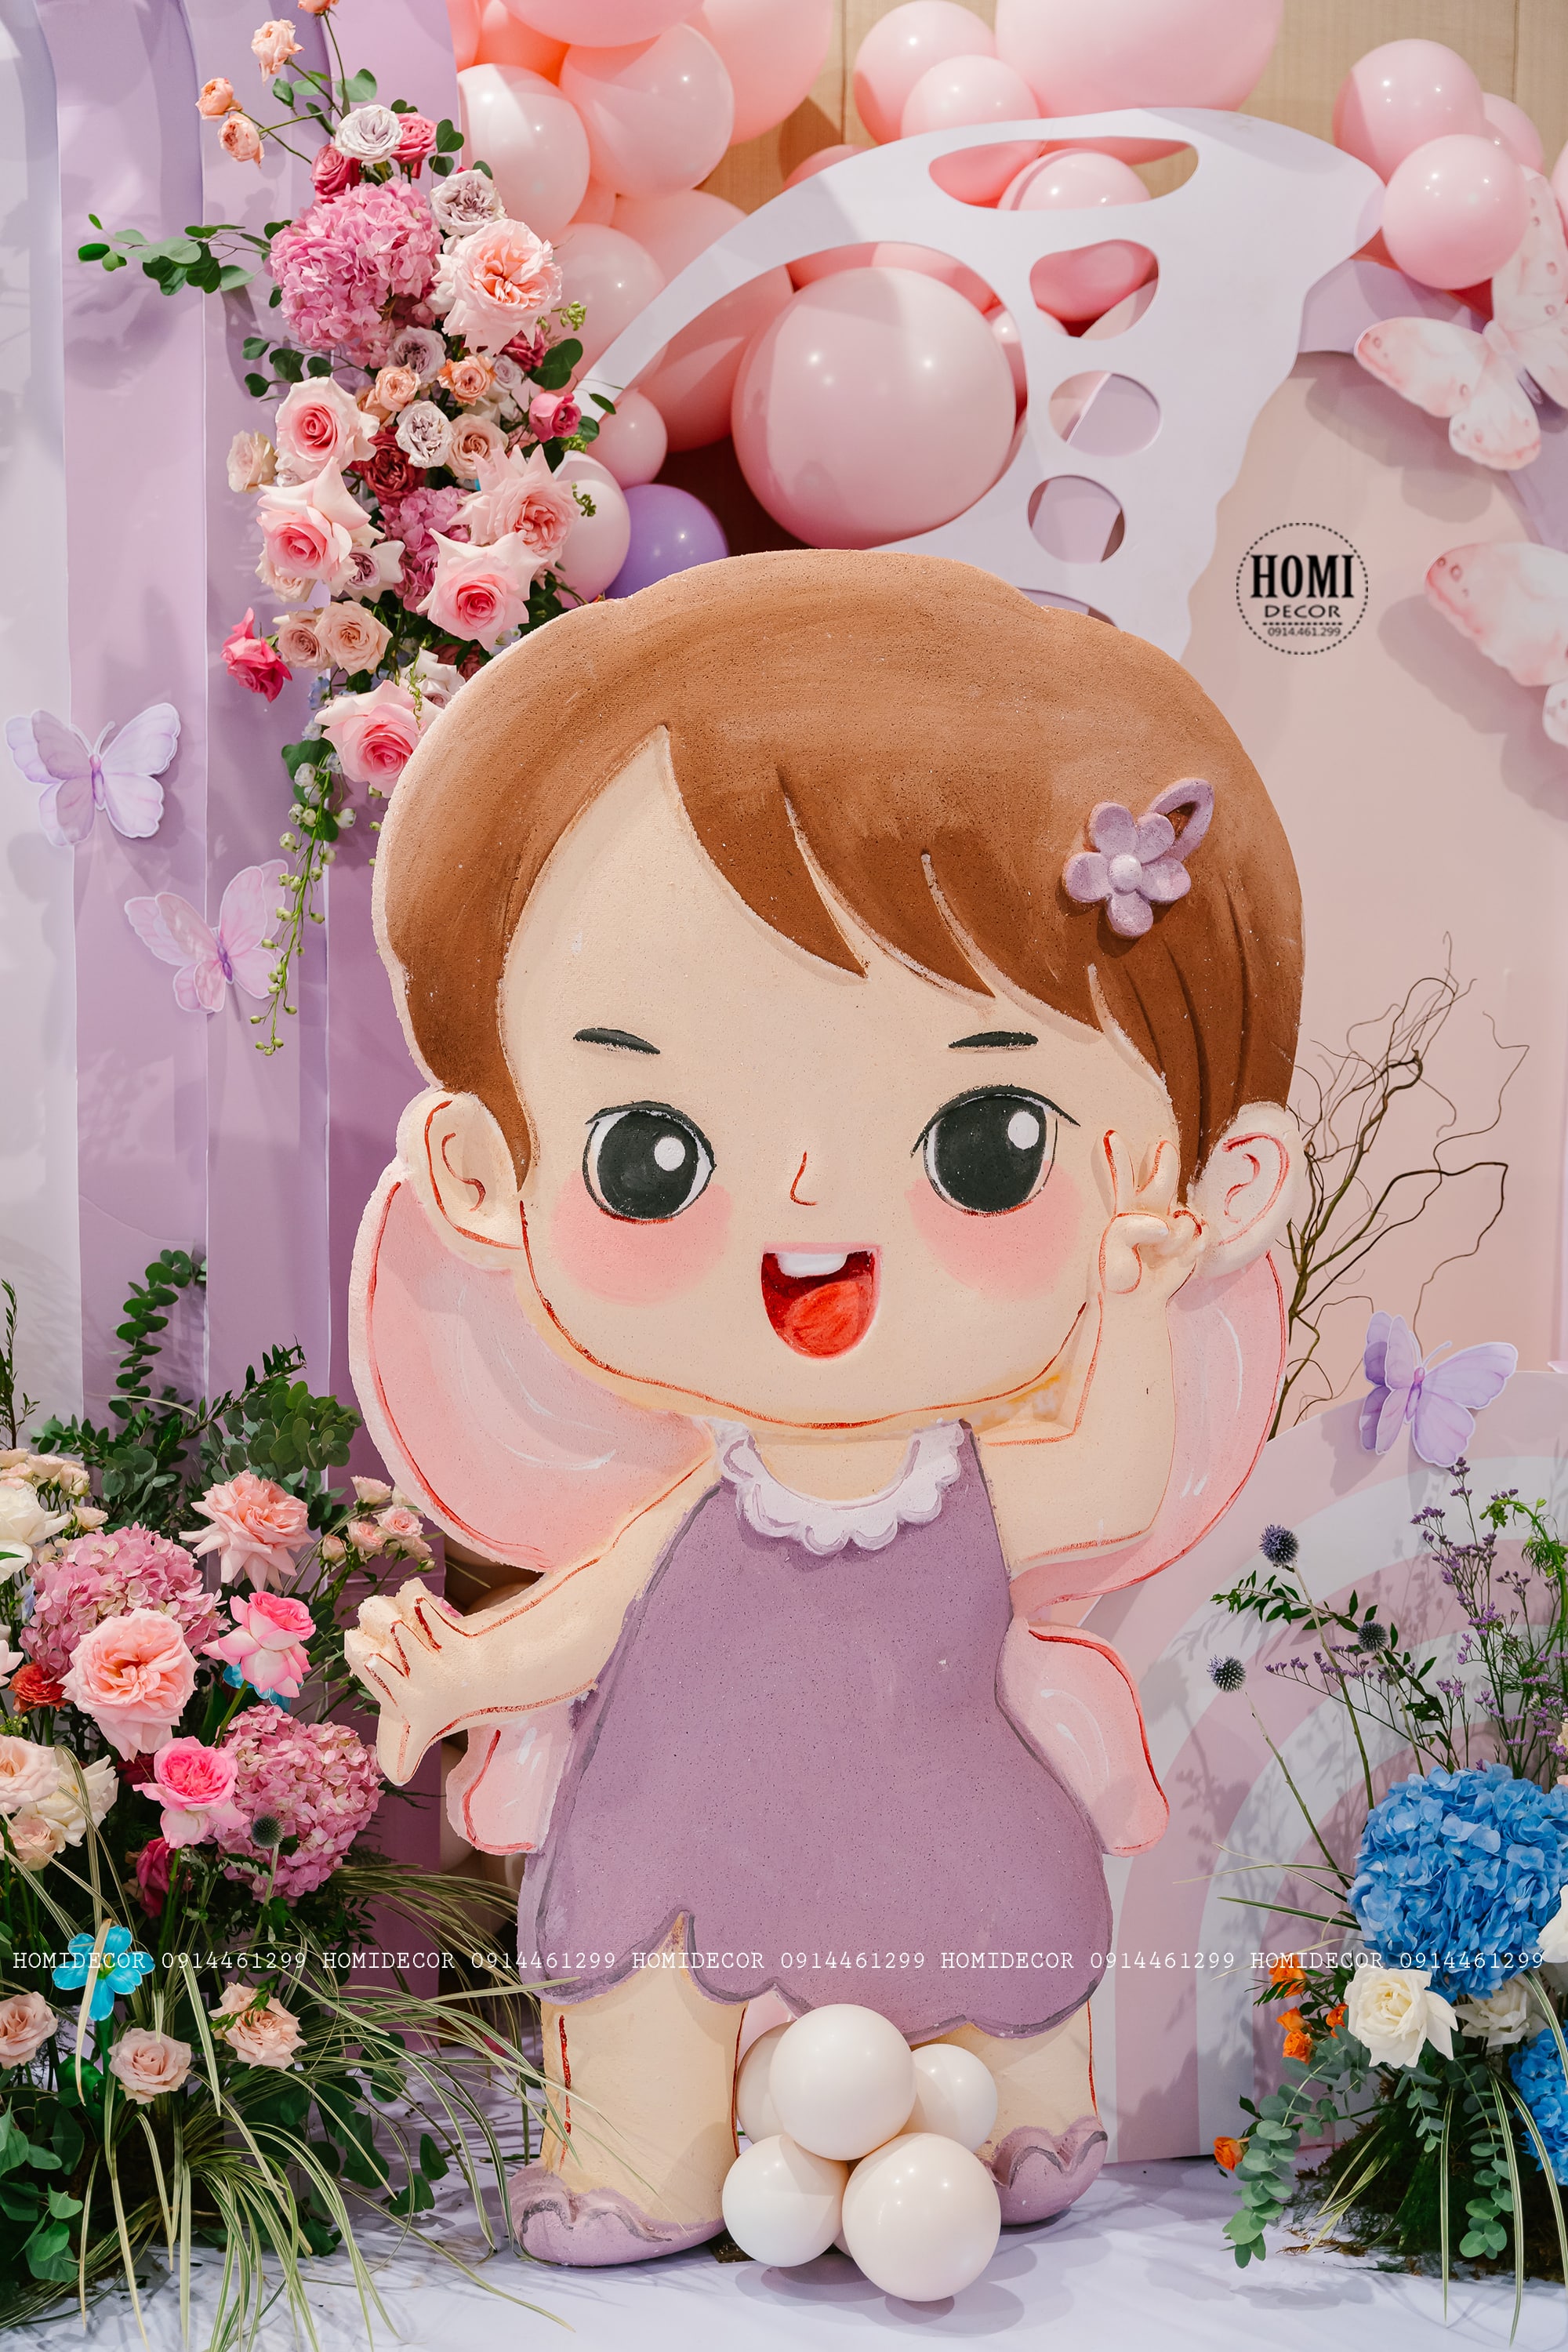 Trang trí sinh nhật bé gái người Hàn Quốc chủ đề khu vườn bươm bướm